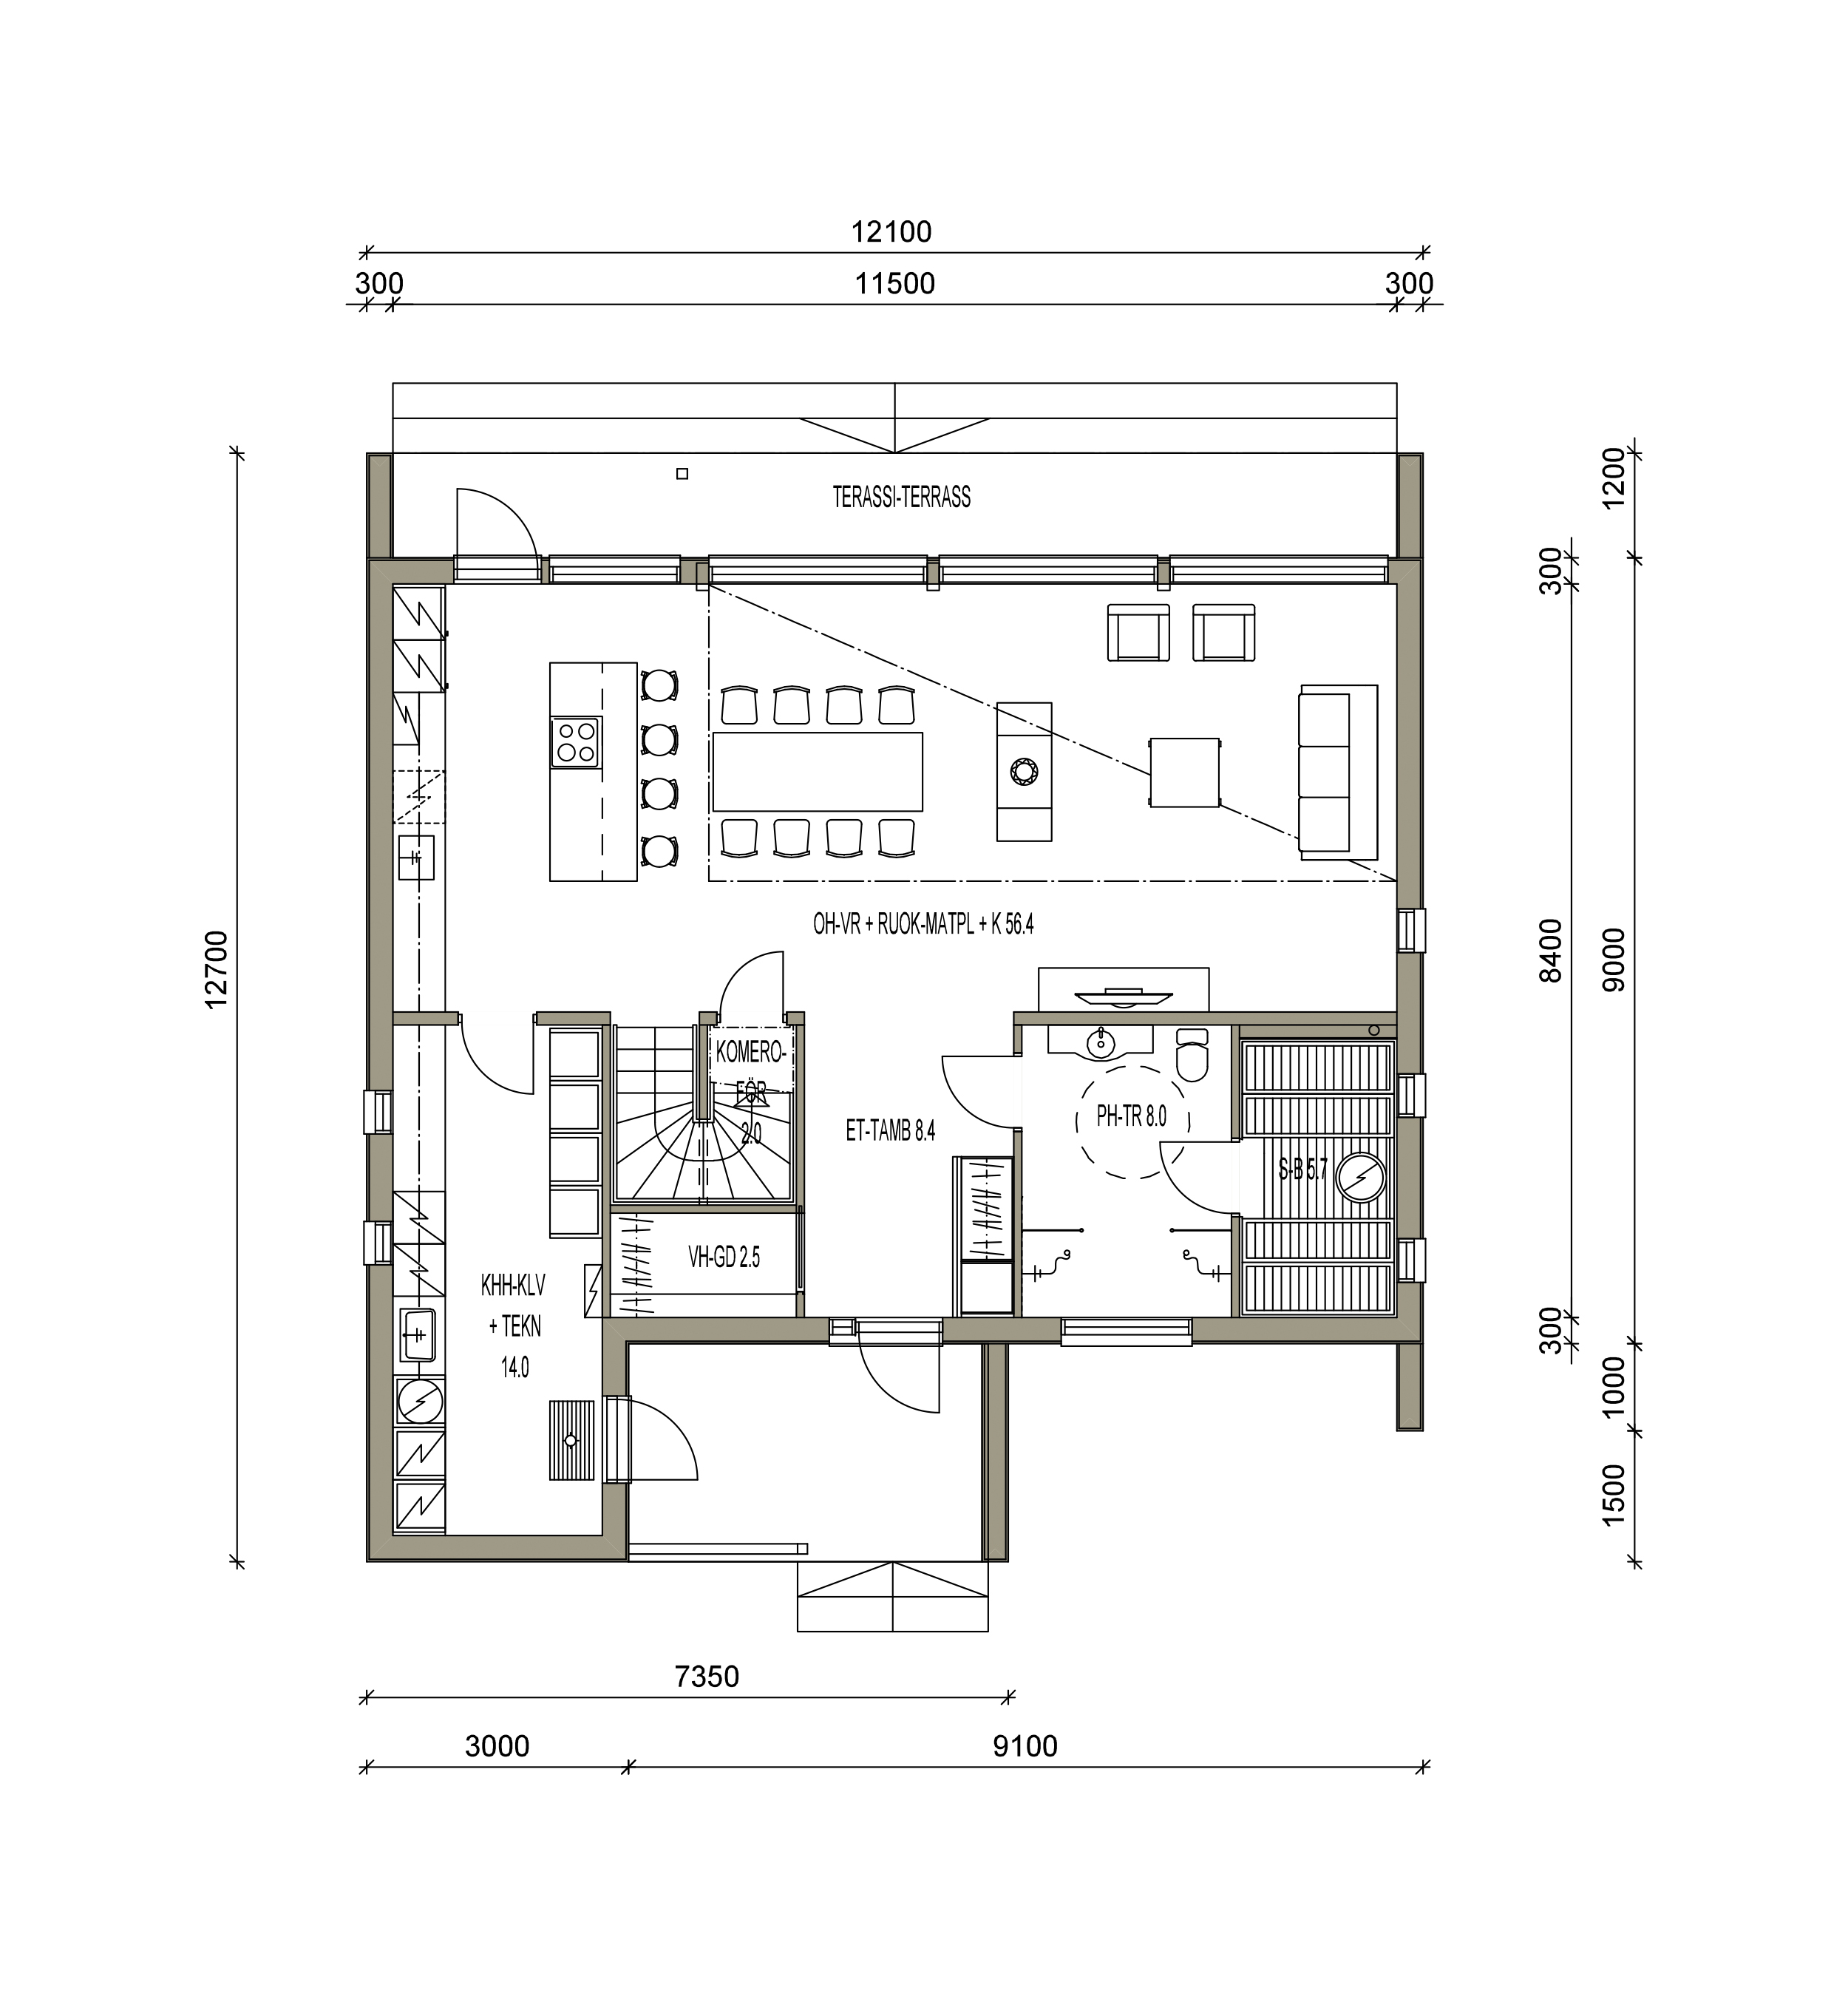 maison sips cubique plan 170 m² 02